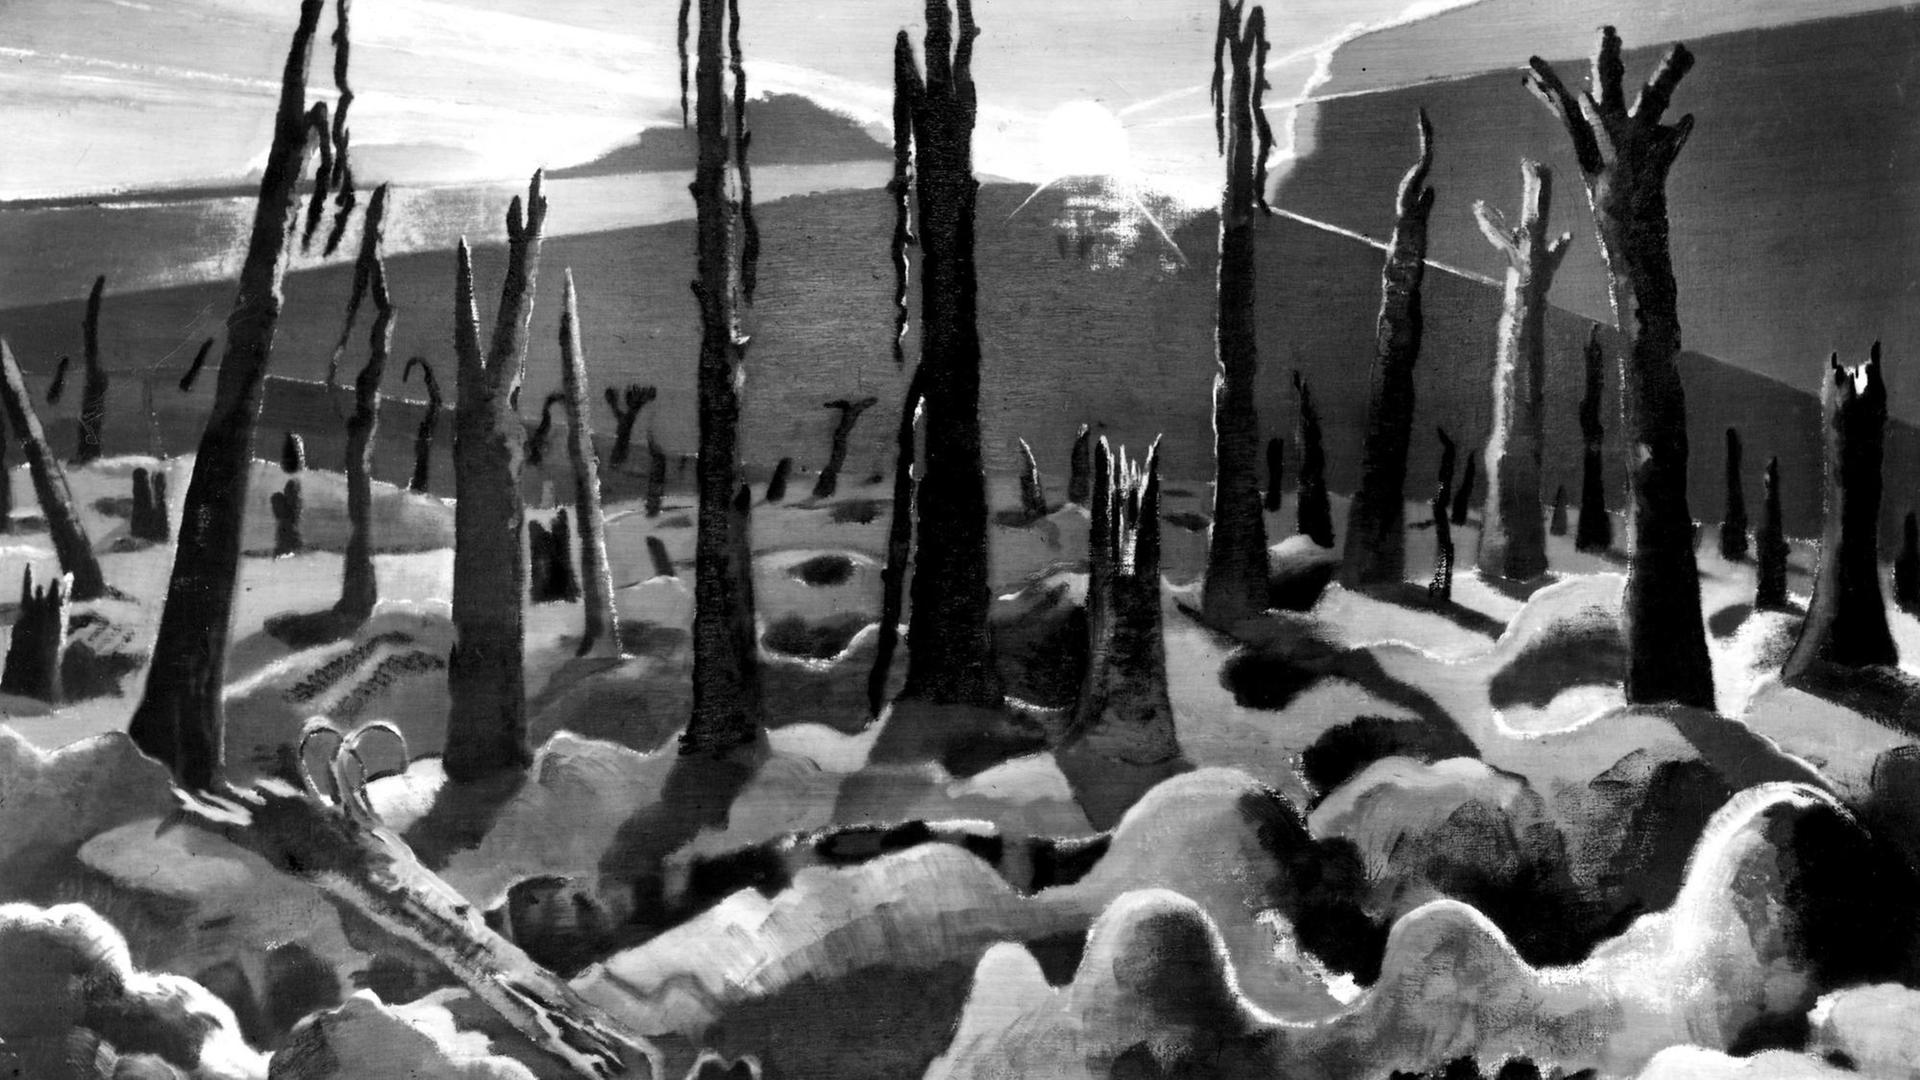  Auf dem in schwarz-weiß abfotografierten Gemälde "We are making a new world" ("Wir schaffen eine neue Welt") des britischen Surrealisten Paul Nash von 1918 zum Ersten Weltkrieg ist ein verwüstetes, menschenleeres Schlachtfeld in Belgien zu sehen. 